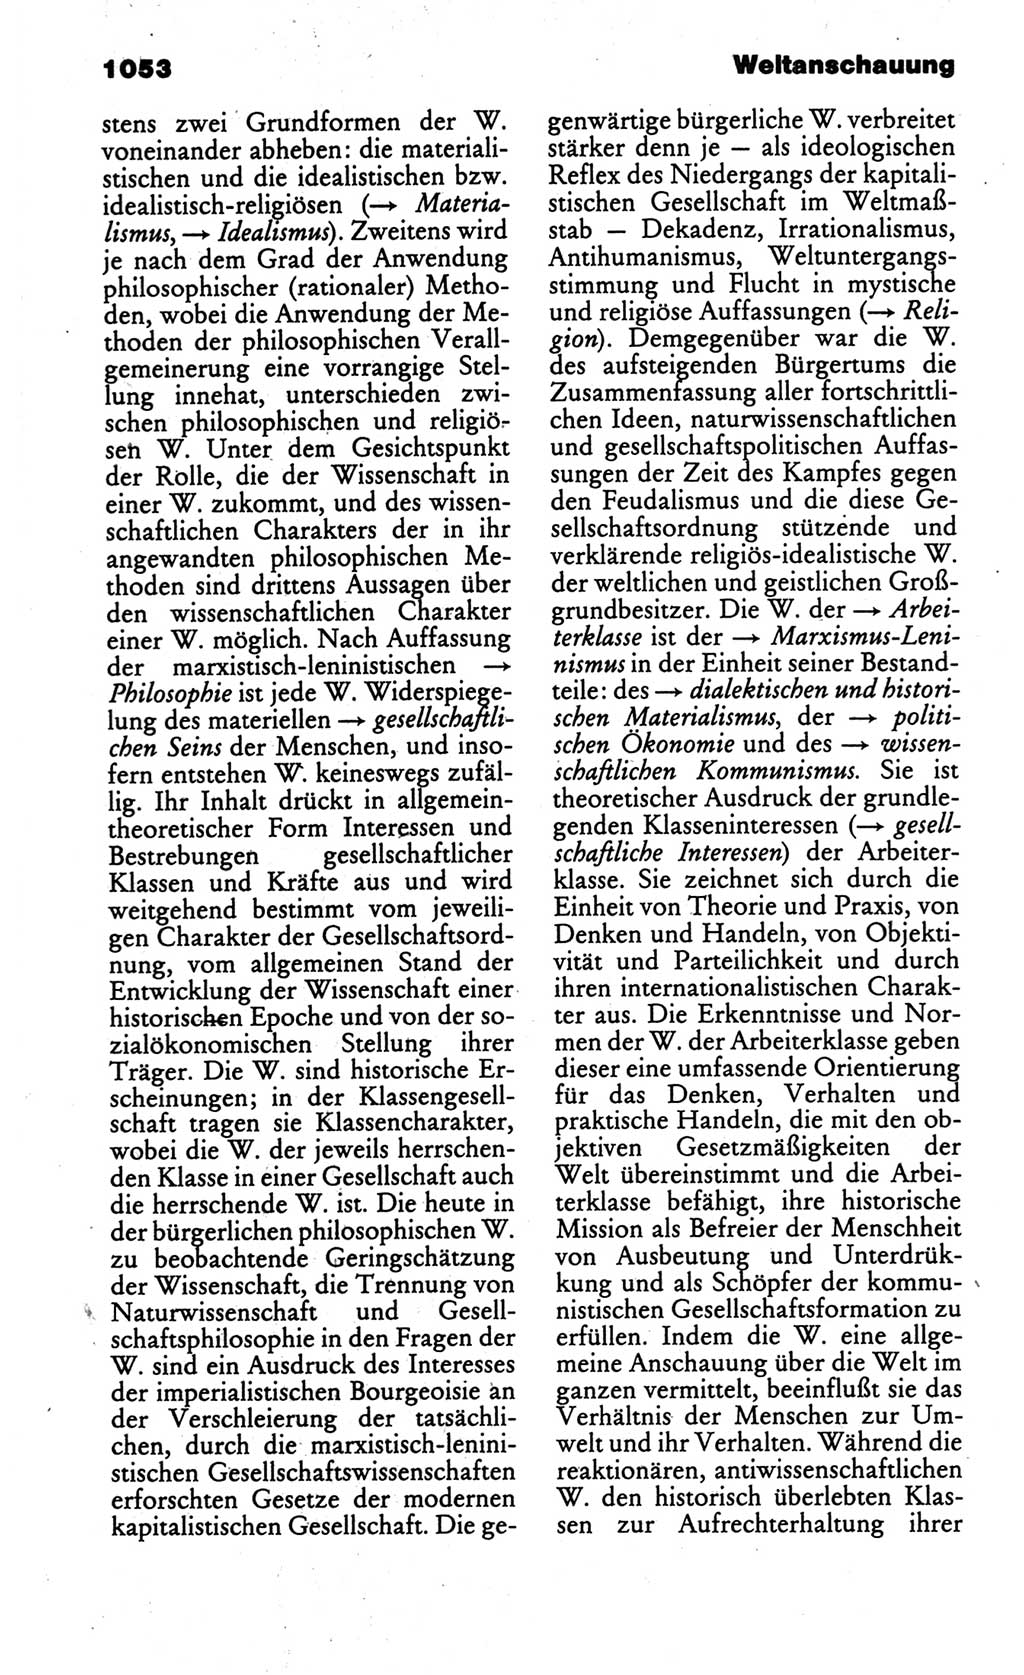 Kleines politisches Wörterbuch [Deutsche Demokratische Republik (DDR)] 1986, Seite 1053 (Kl. pol. Wb. DDR 1986, S. 1053)